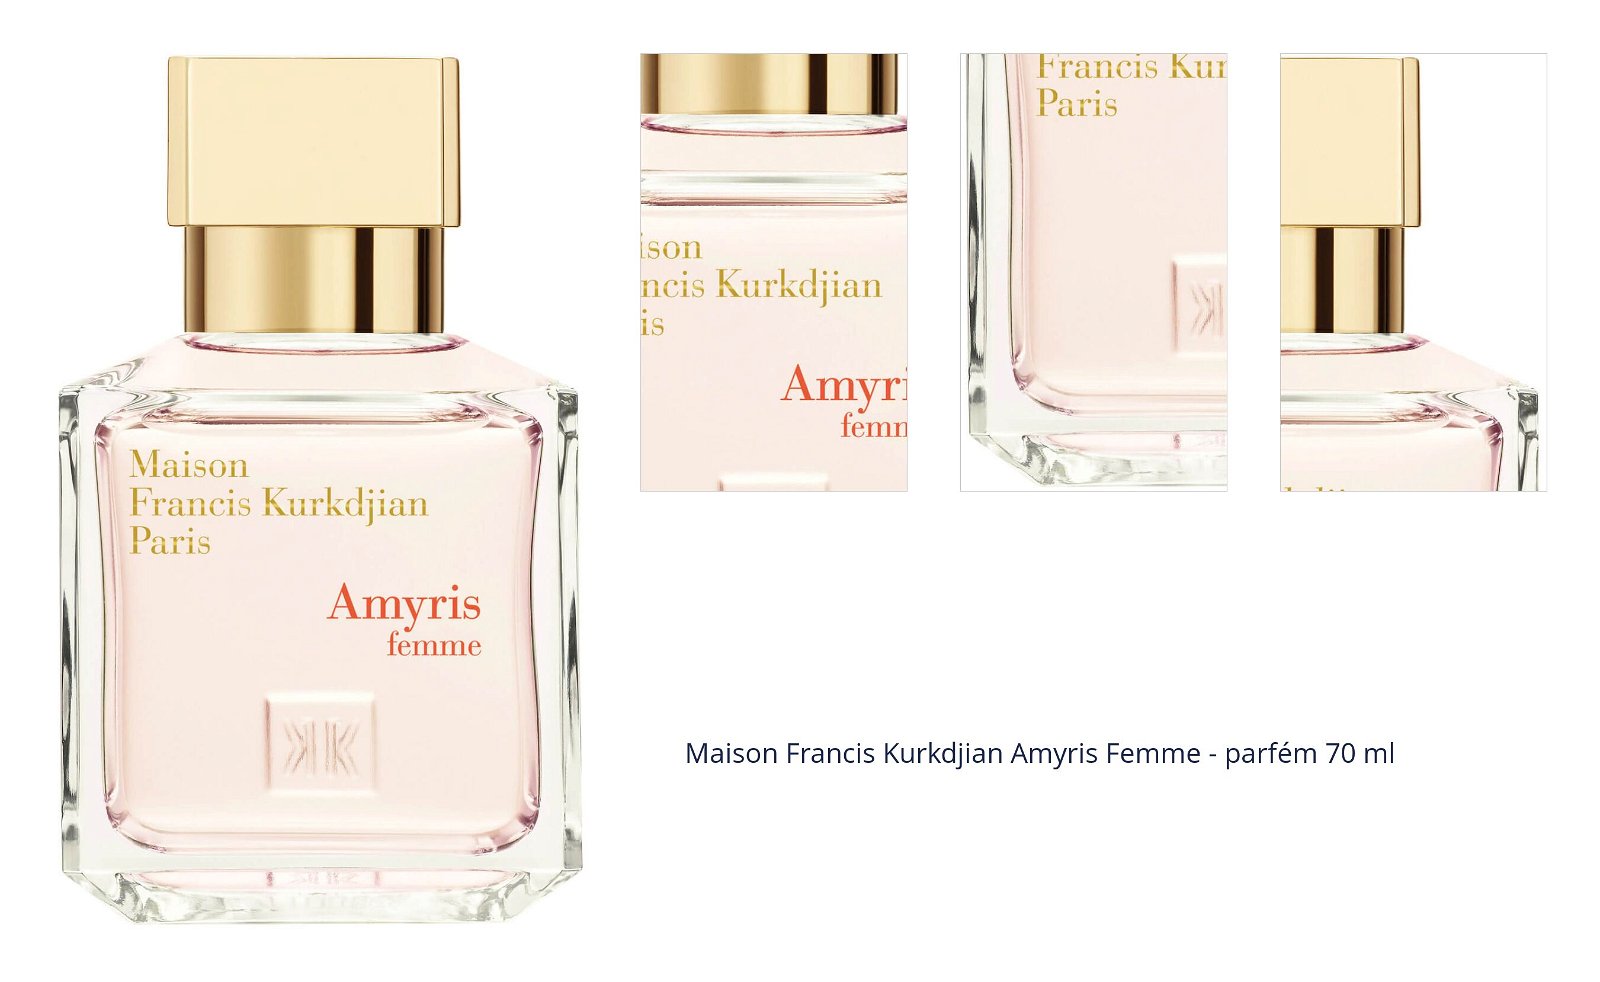 Maison Francis Kurkdjian Amyris Femme - parfém 70 ml 7